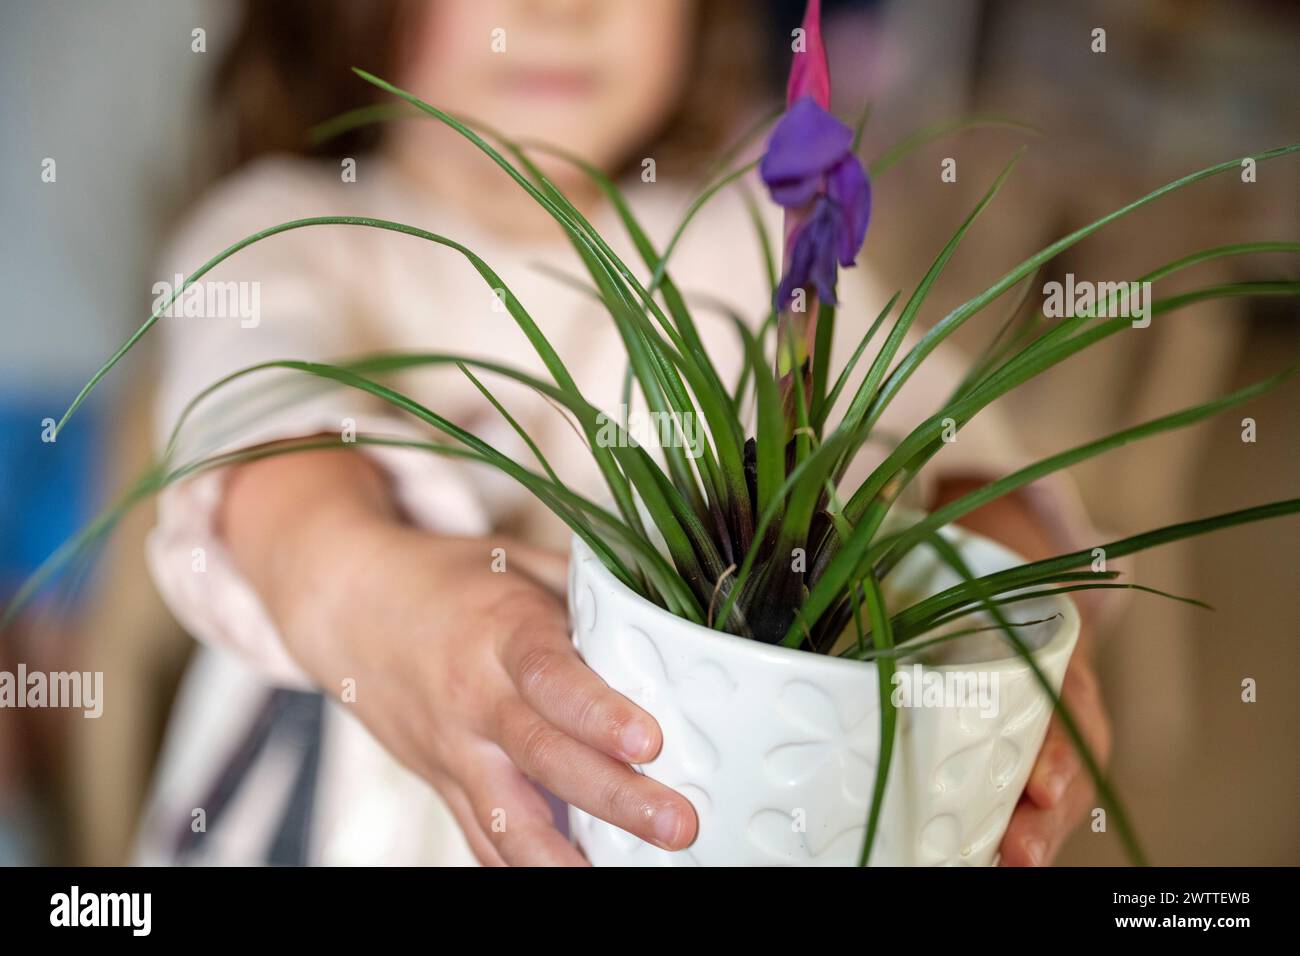 Jeune enfant présentant une plante en pot avec soin et concentration Banque D'Images